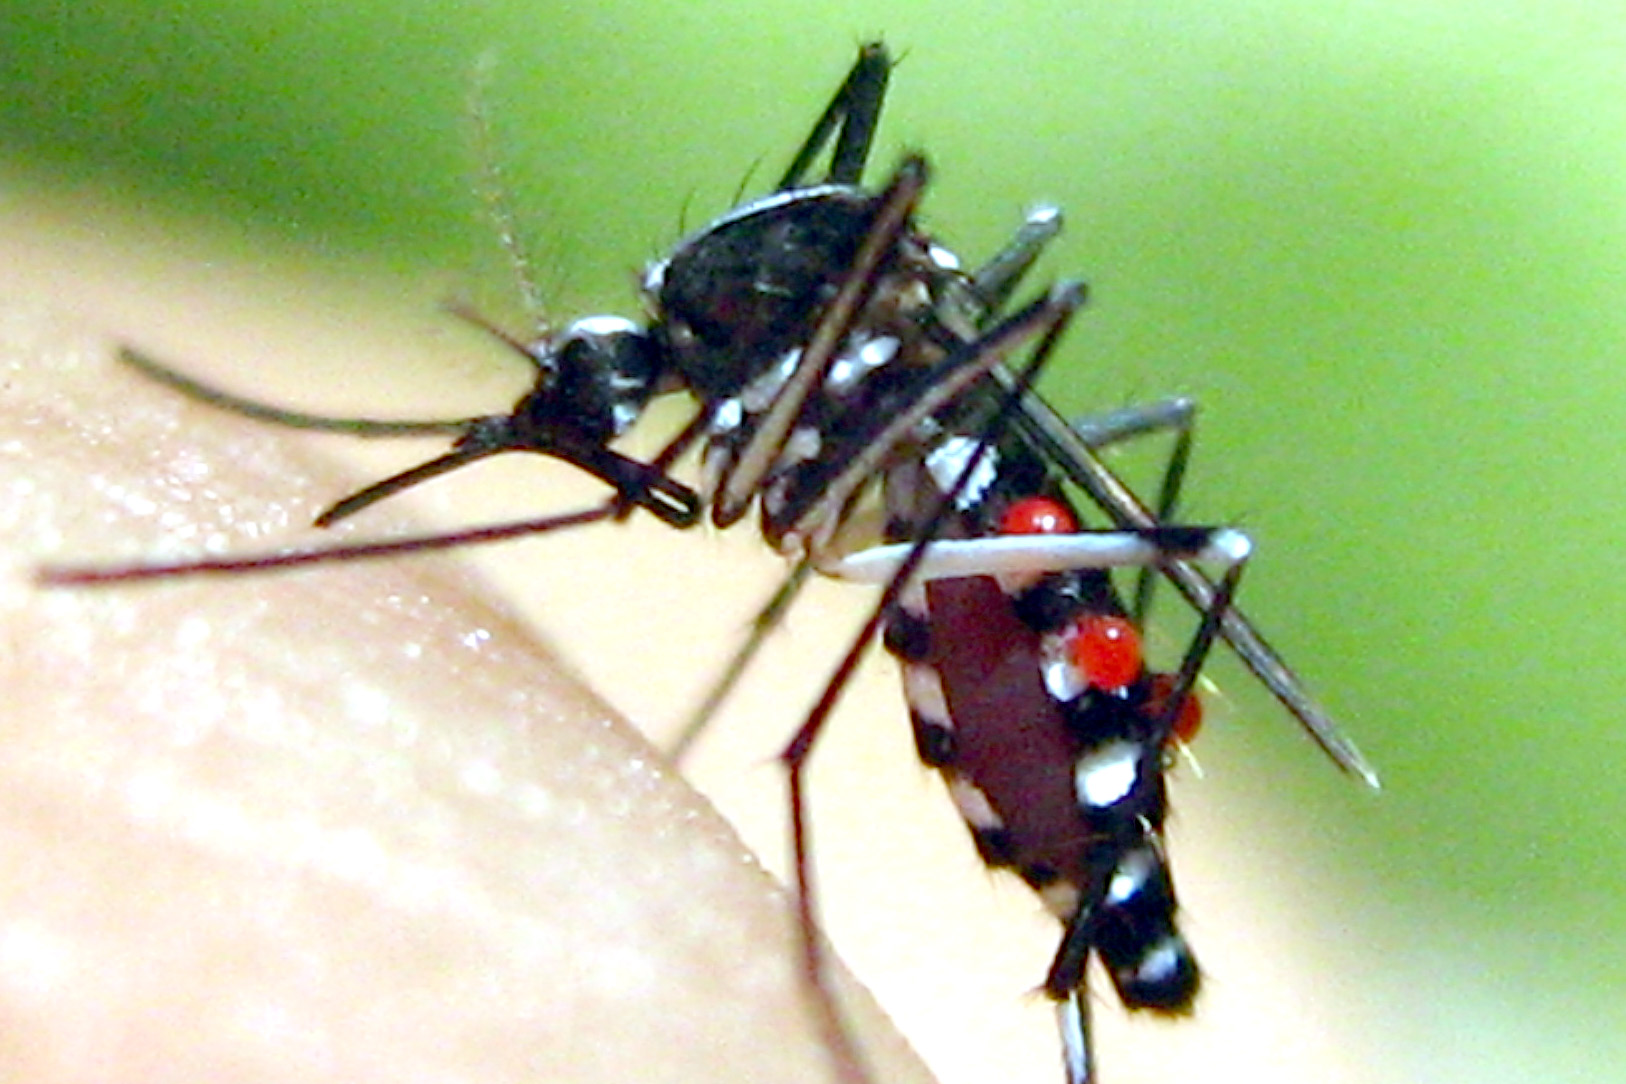 Muỗi mang virus trong khoảng máu người bệnh truyền sang người khác